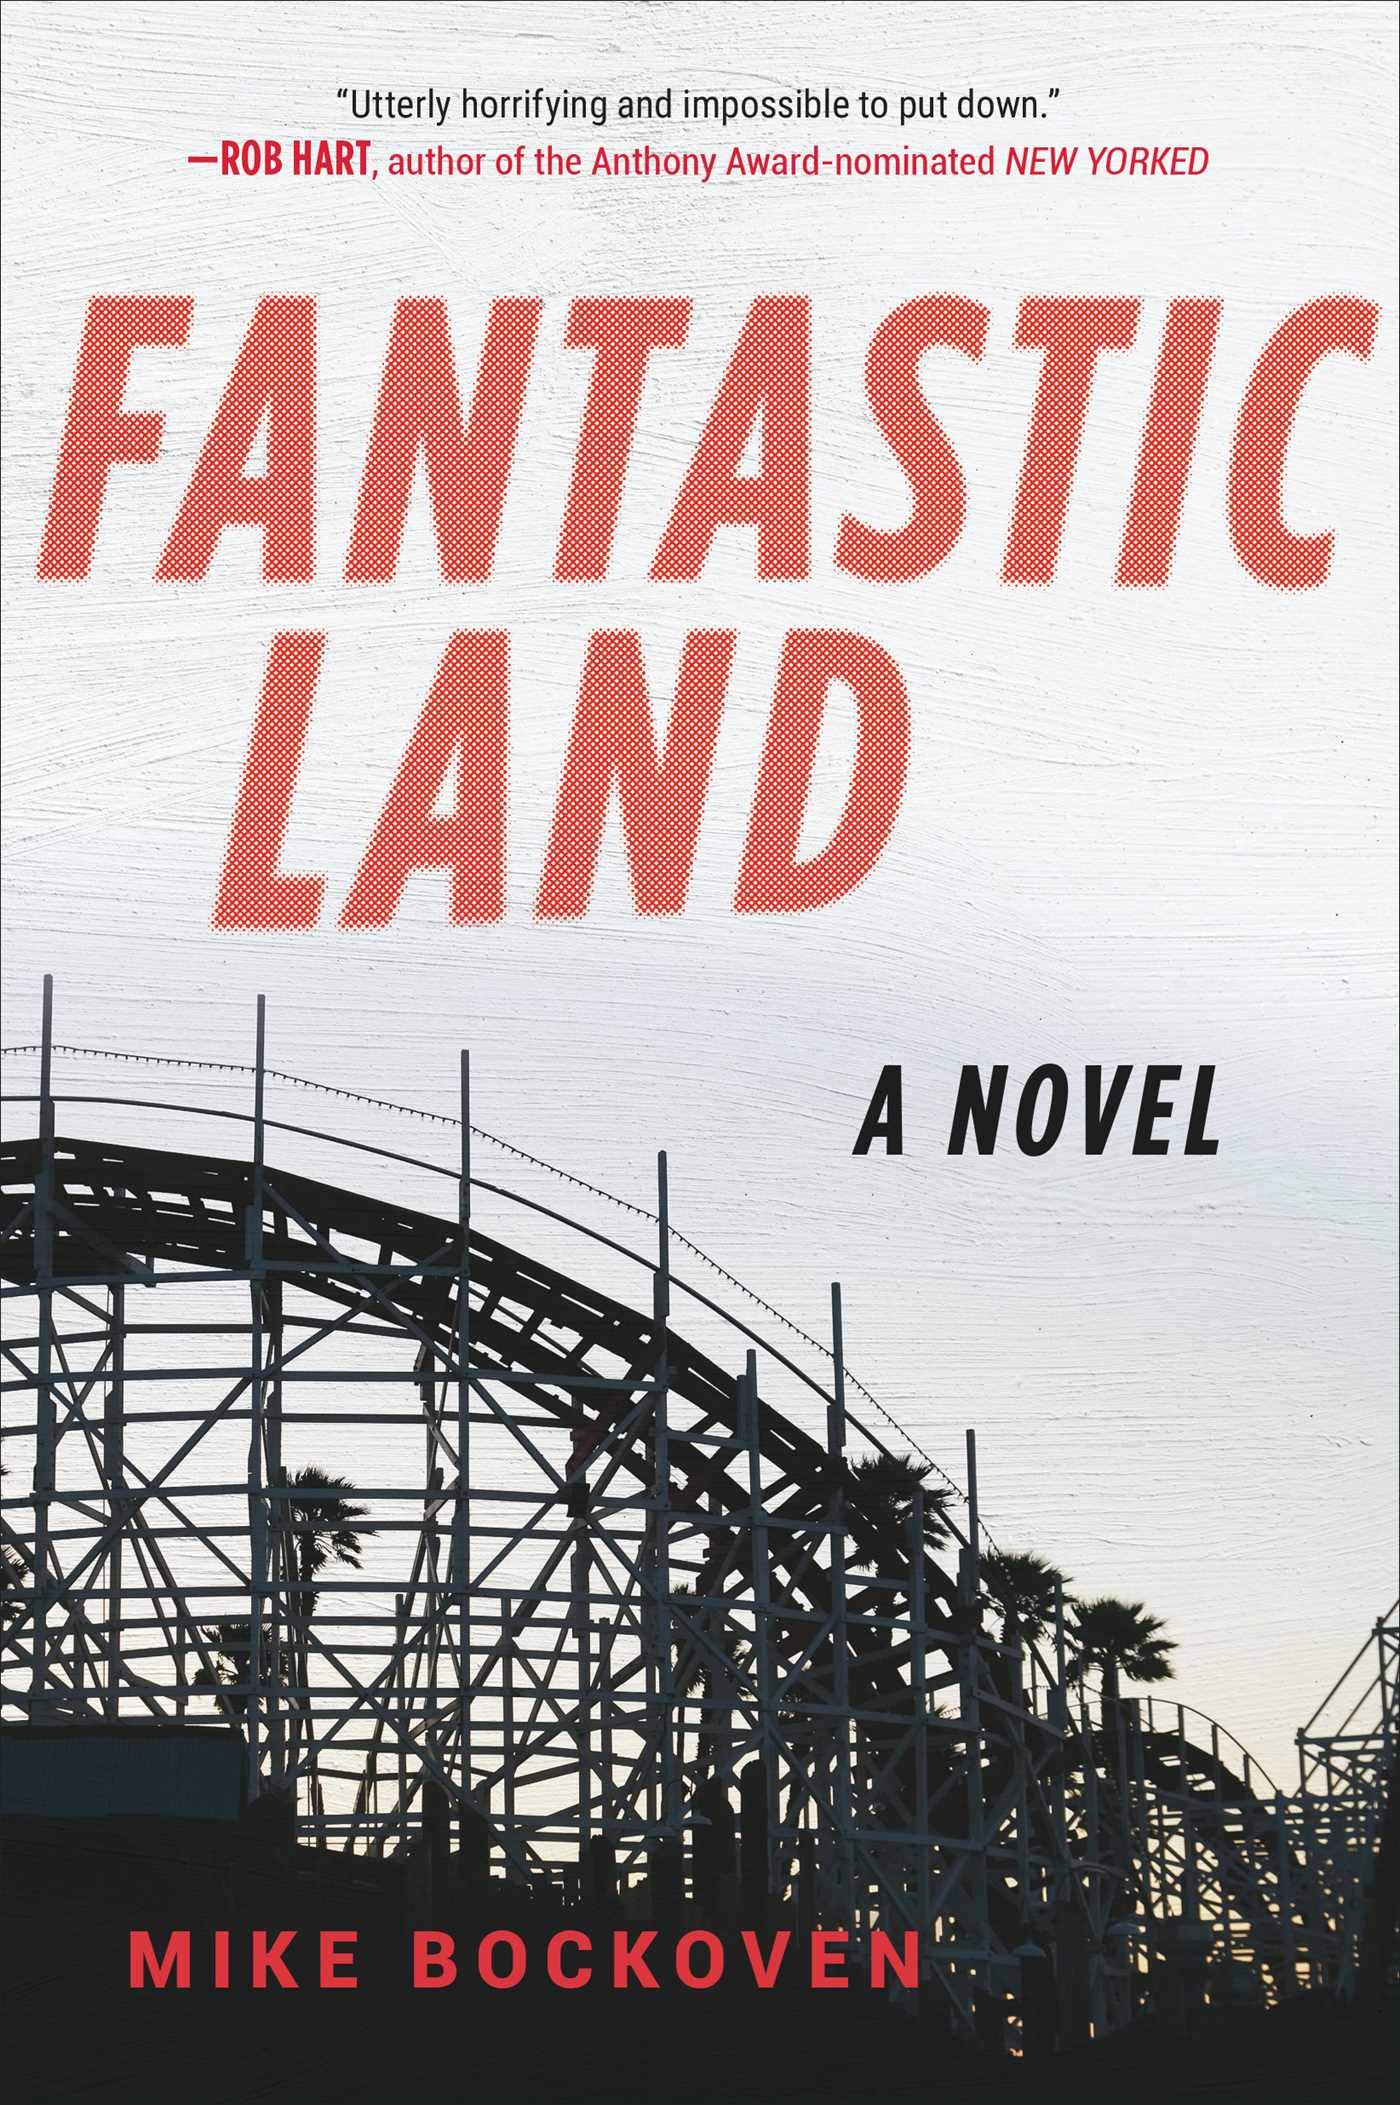 FantasticLand: A Novel